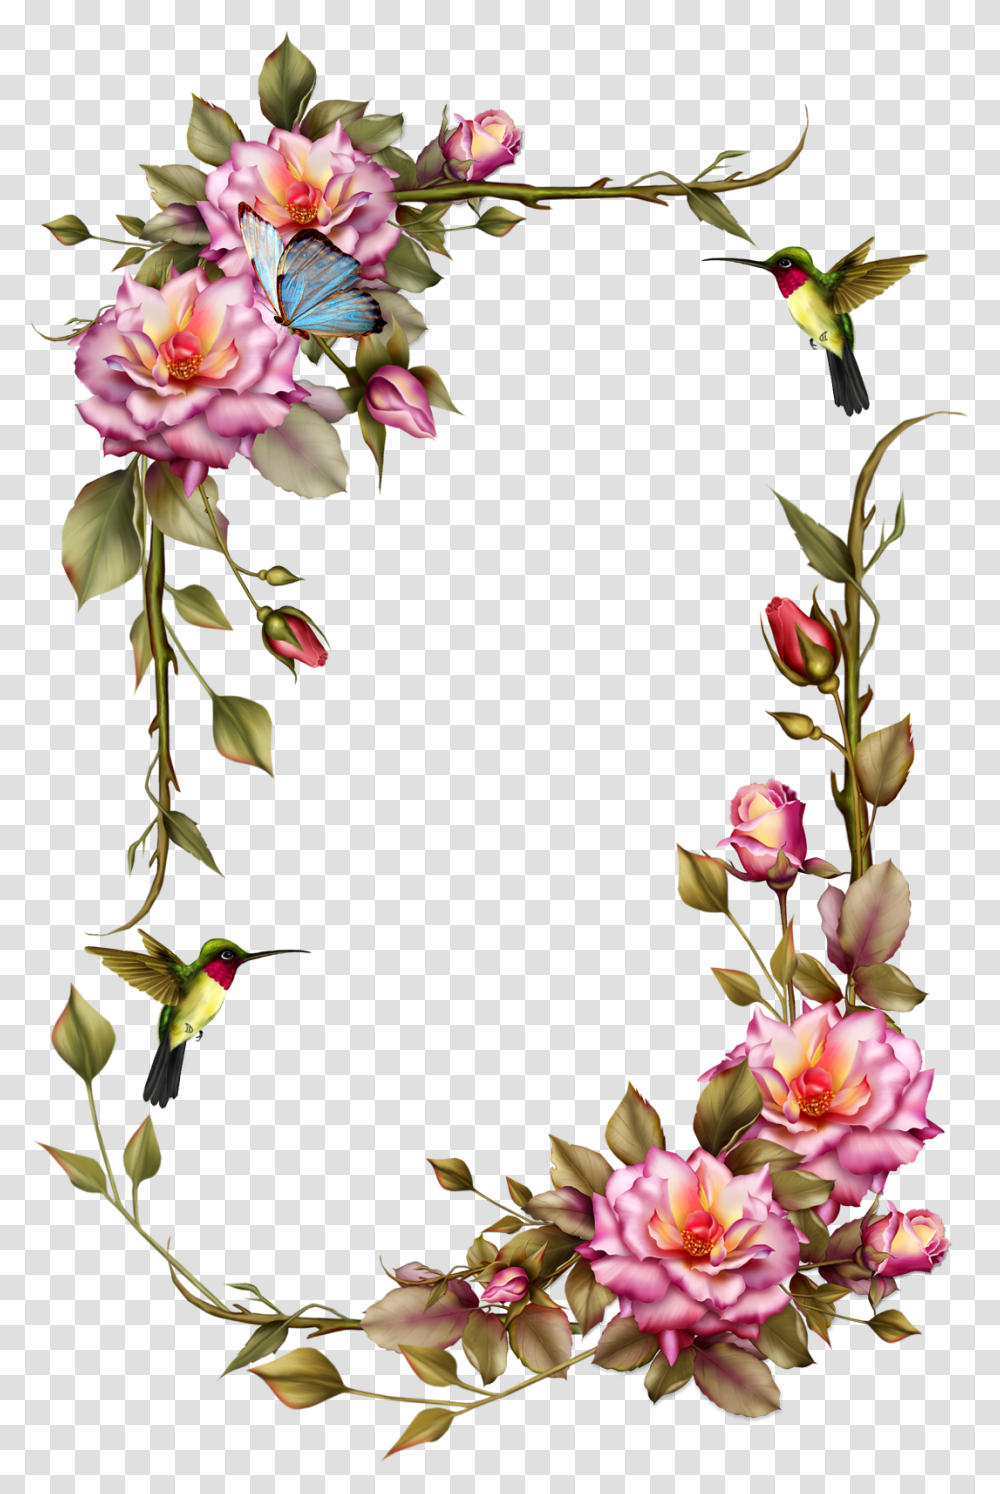 Roses Frame With Humming Bird Flower Frame, Plant, Petal, Flower Arrangement, Animal Transparent Png